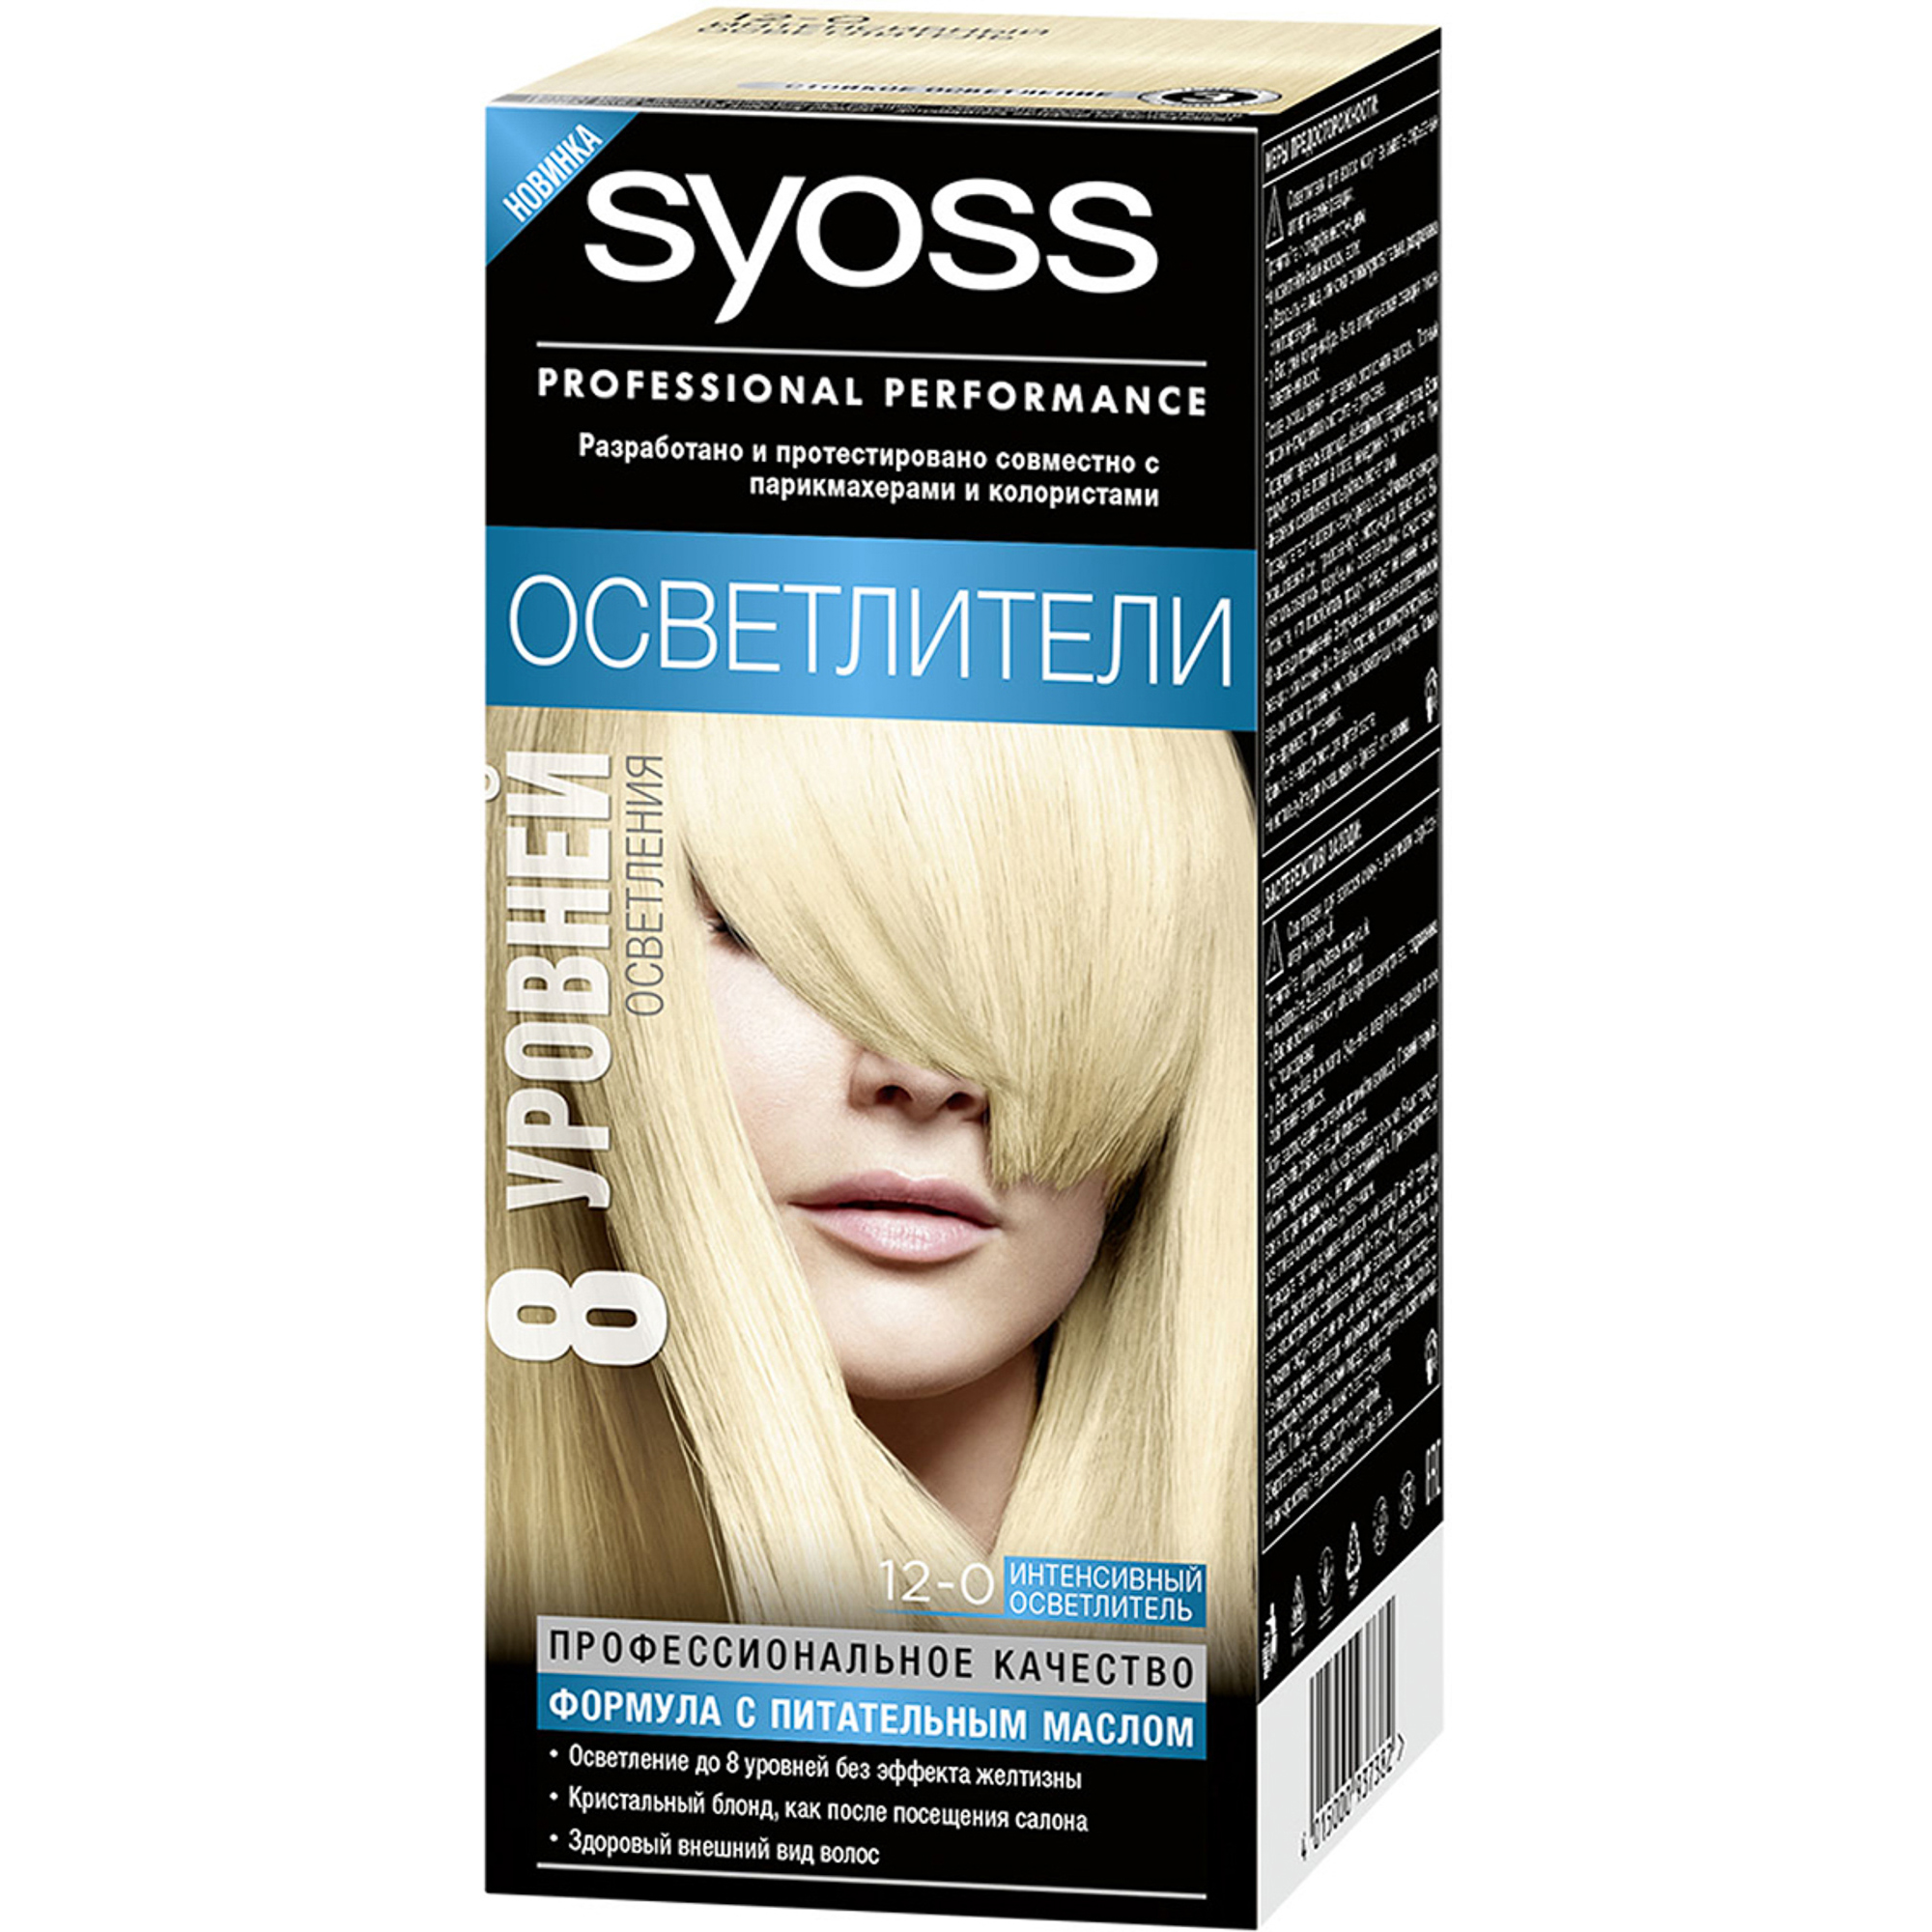 Краска для волос Syoss Осветлители 12-0 Интенсивный осветлитель